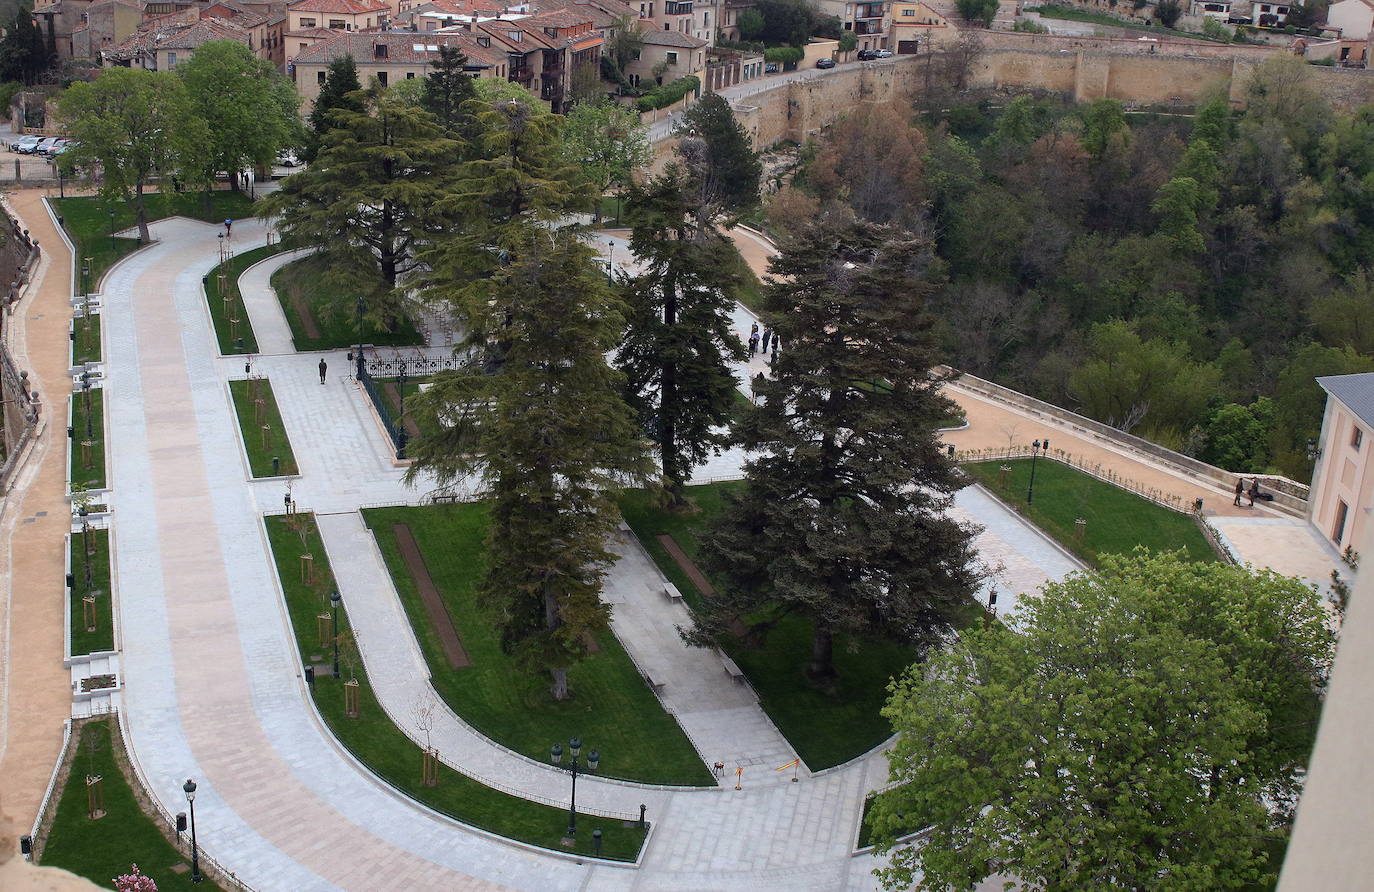 El Patronato restringirá el acceso a la plazuela del Alcázar a mascotas, patinetes o bicicletas